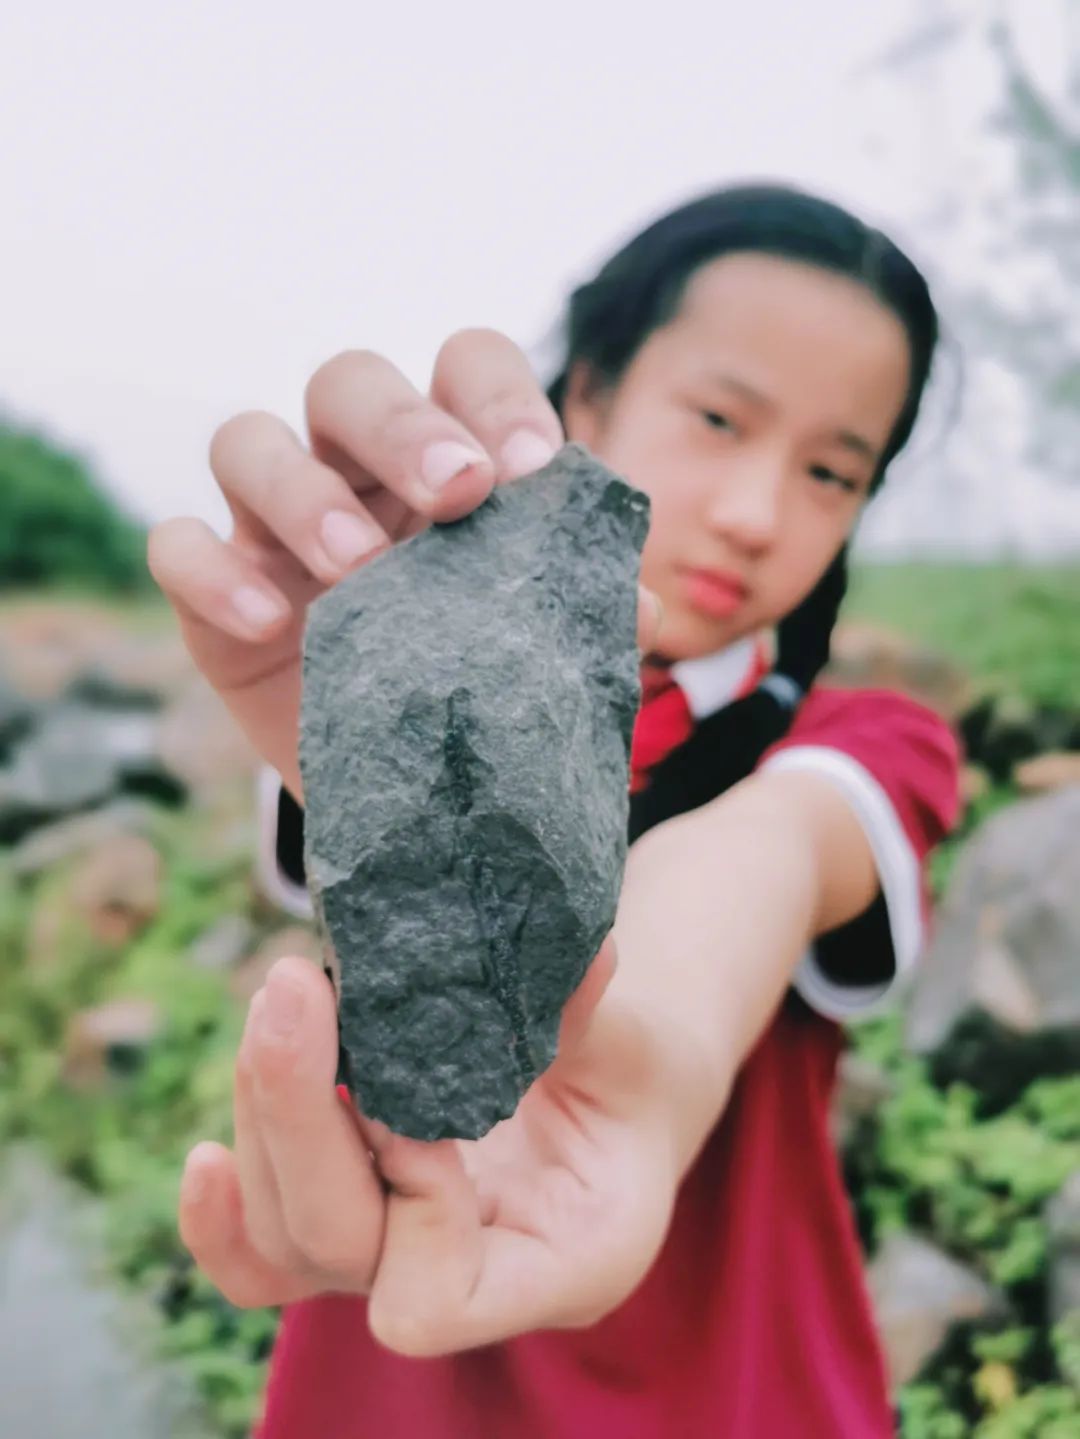 黄杨昕悦向记者展示这块体积稍大的化石